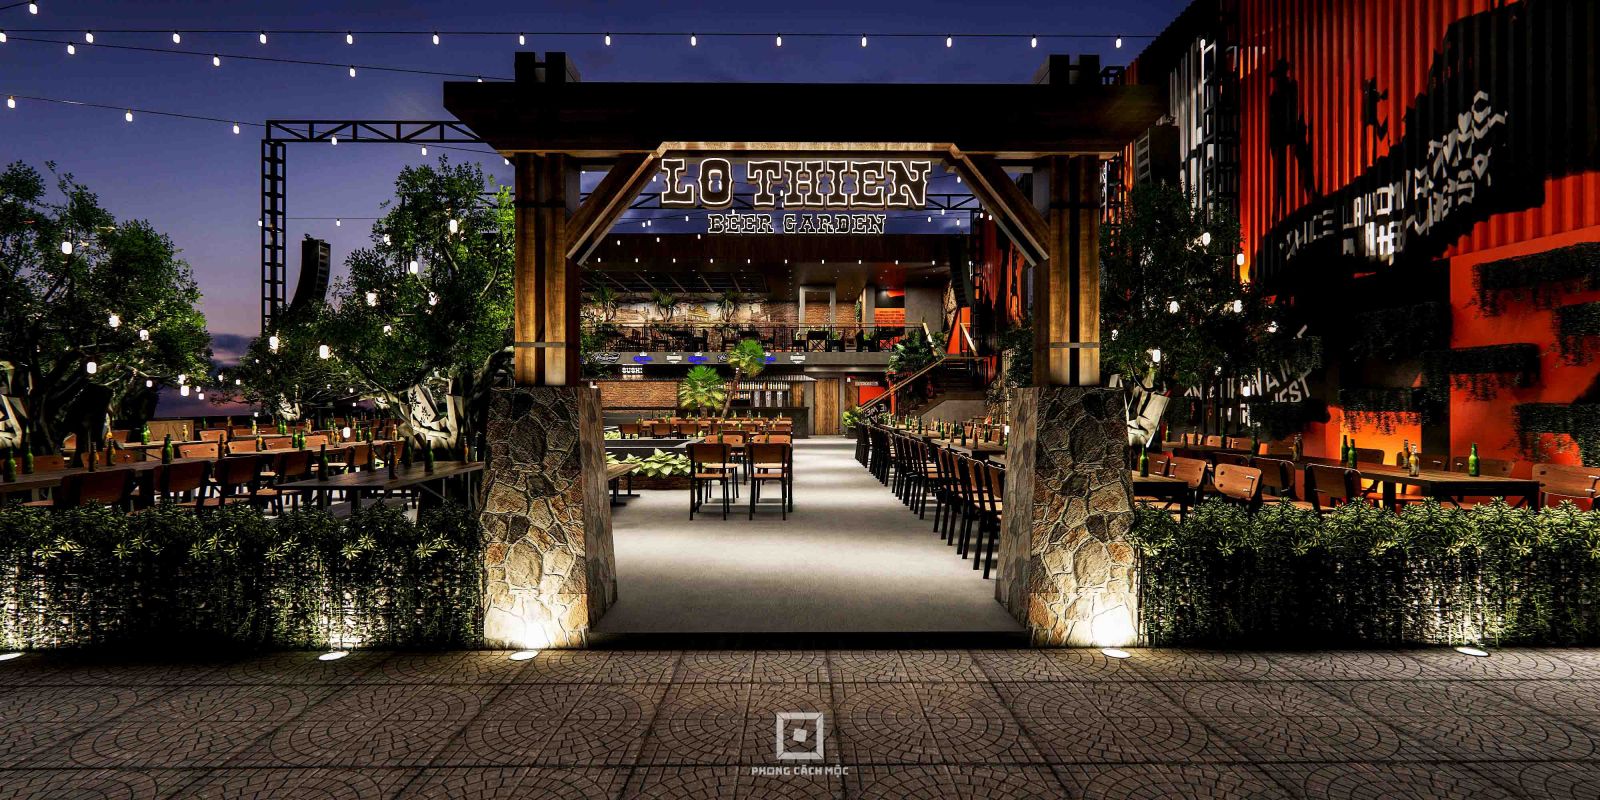 thiết kế cổng ấn tượng - dự án lộ thiên beer garden